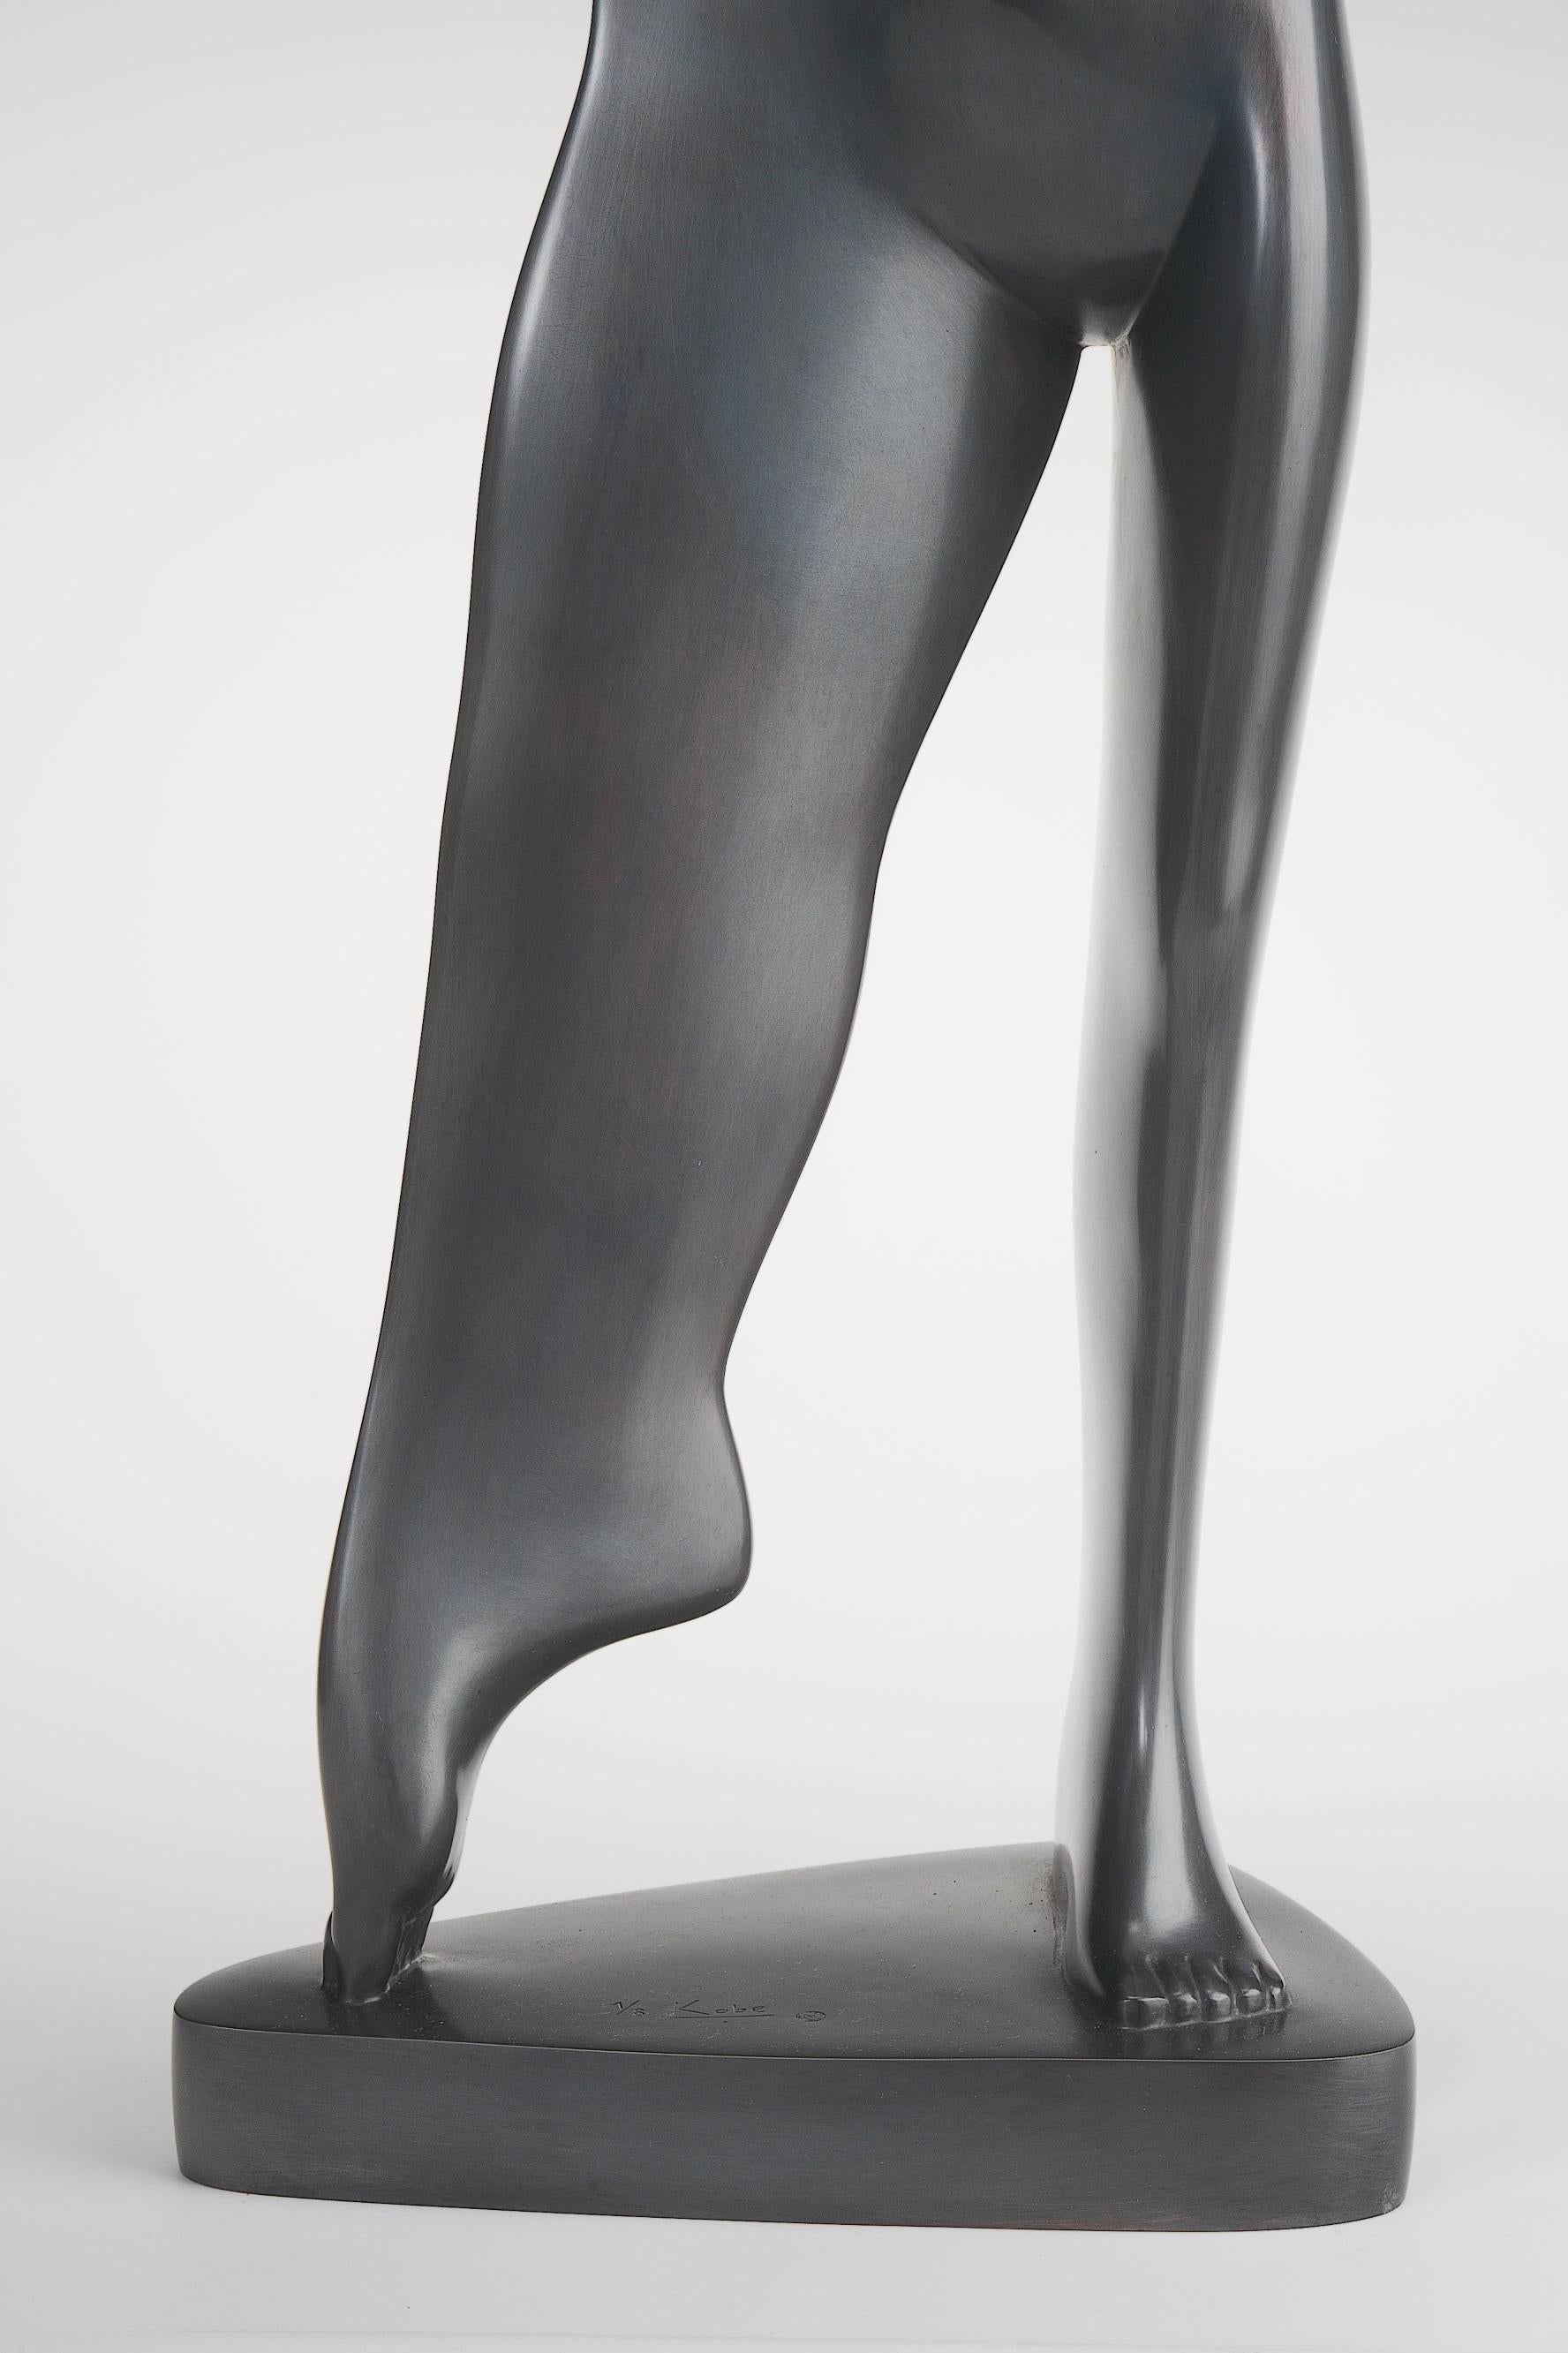 sculpture femme debout